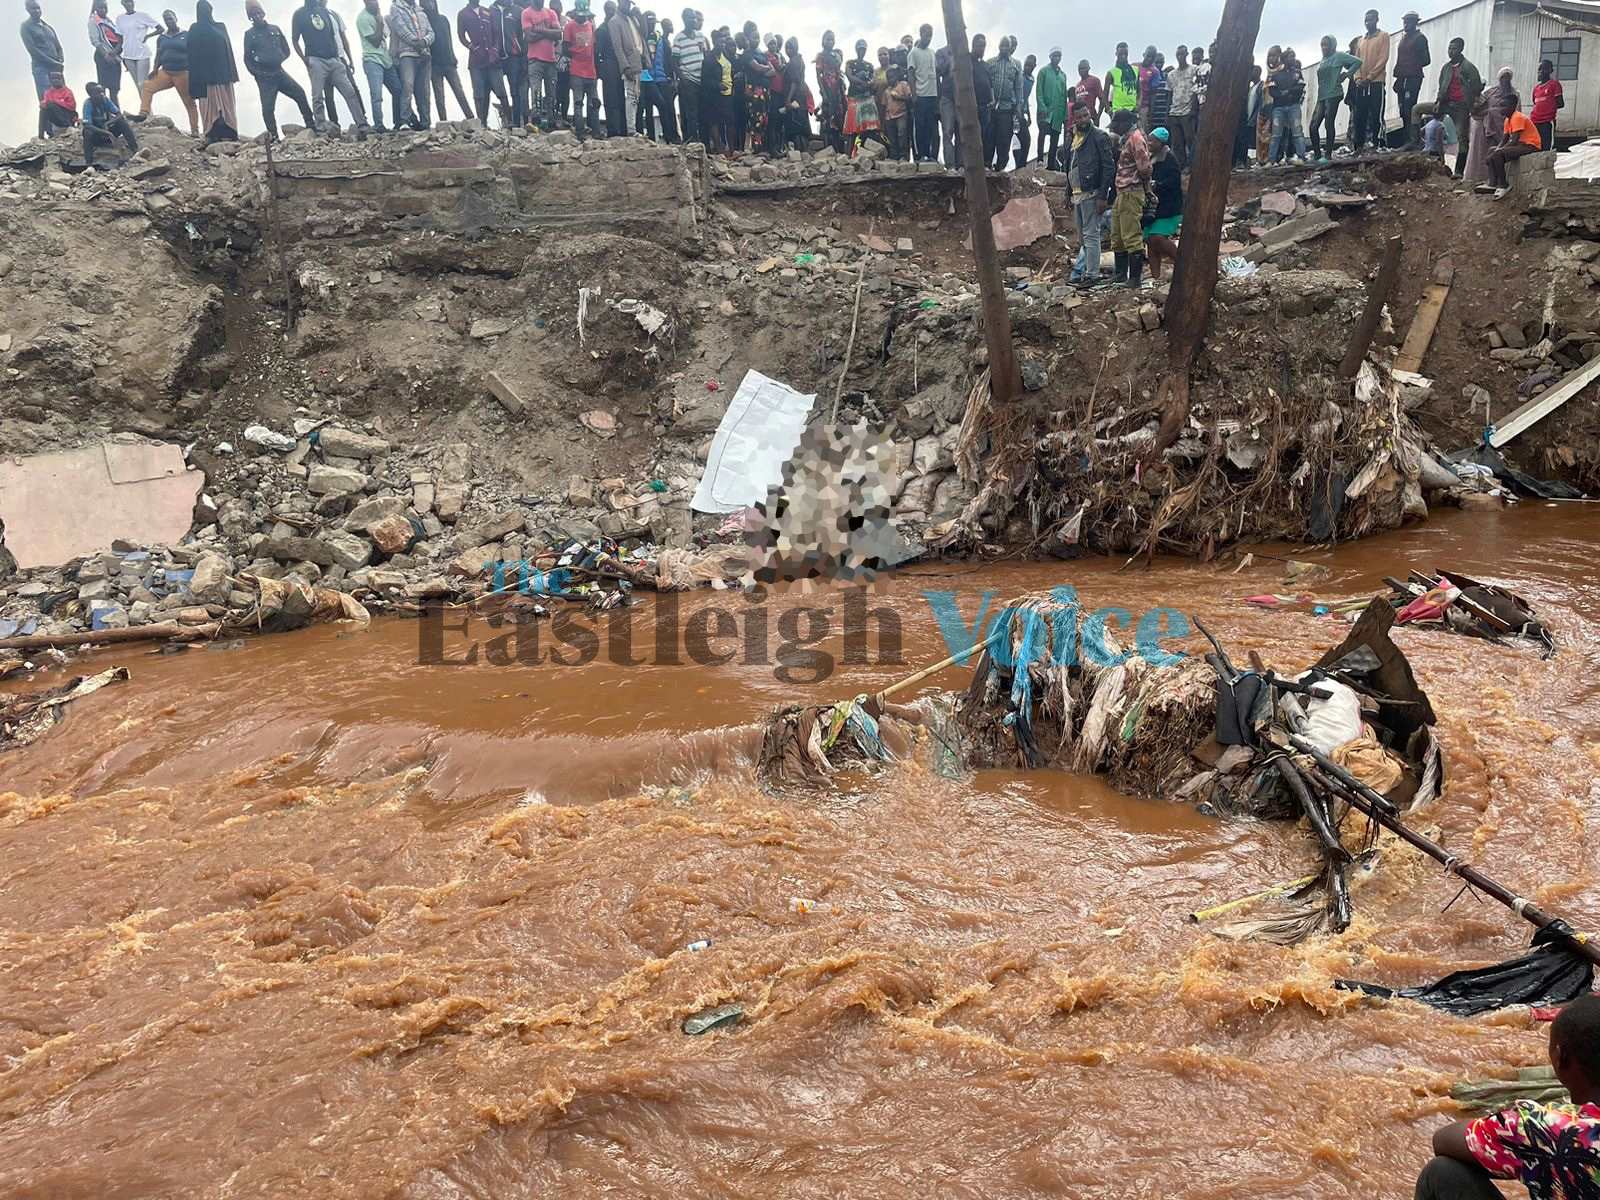 Mathare residents slam police over river body retrieval